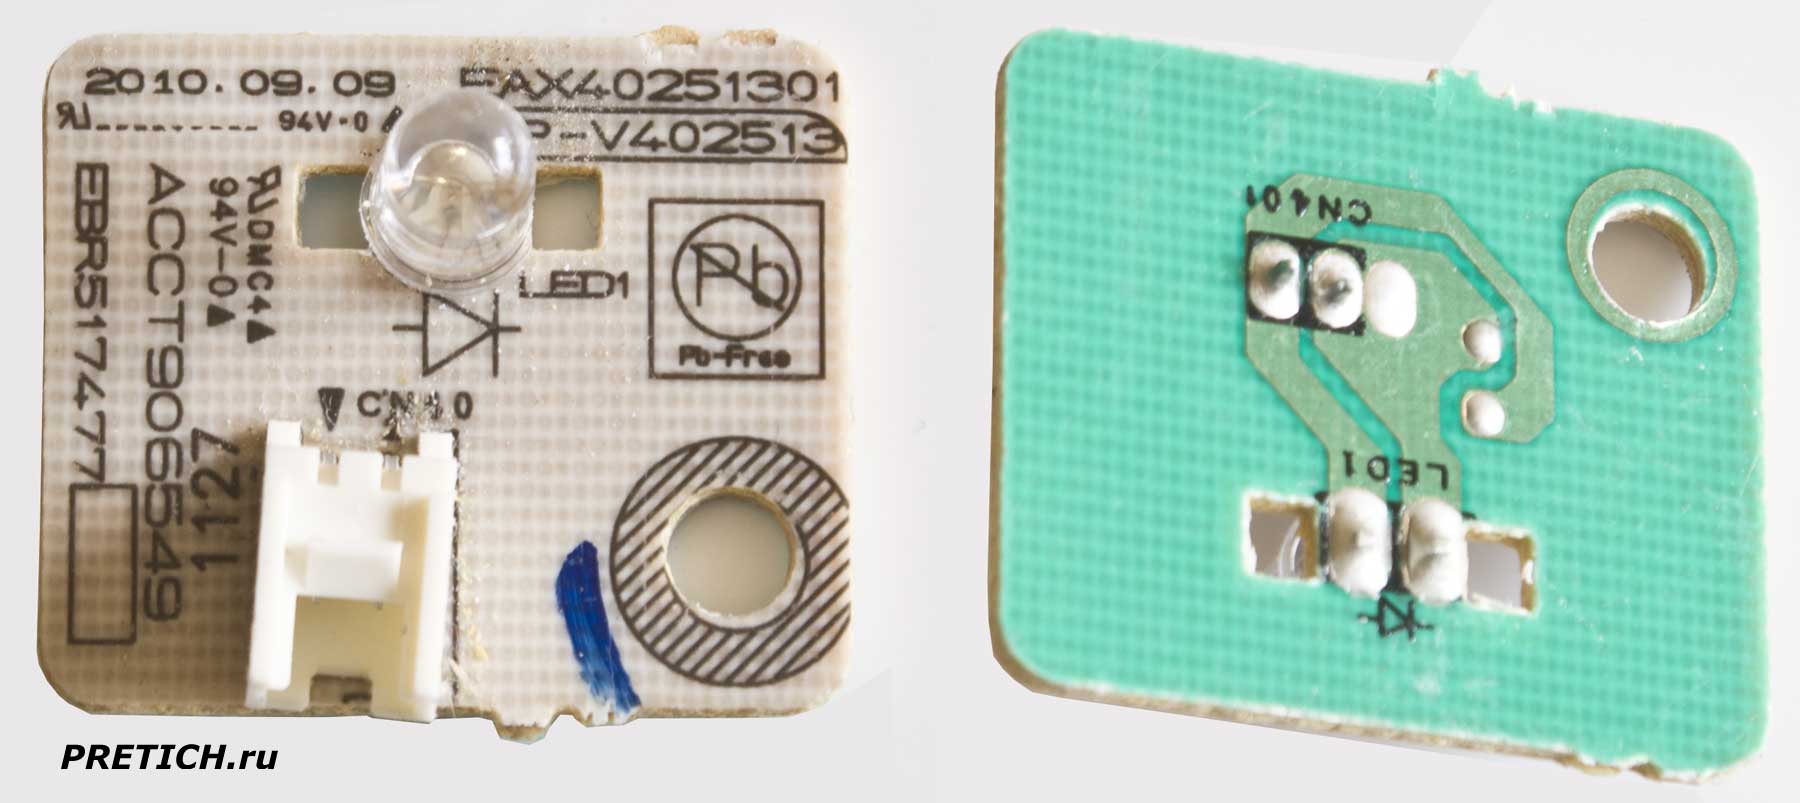 EBR517477 плата индикатора в пылесосе LG VK8810HUMR ремонт